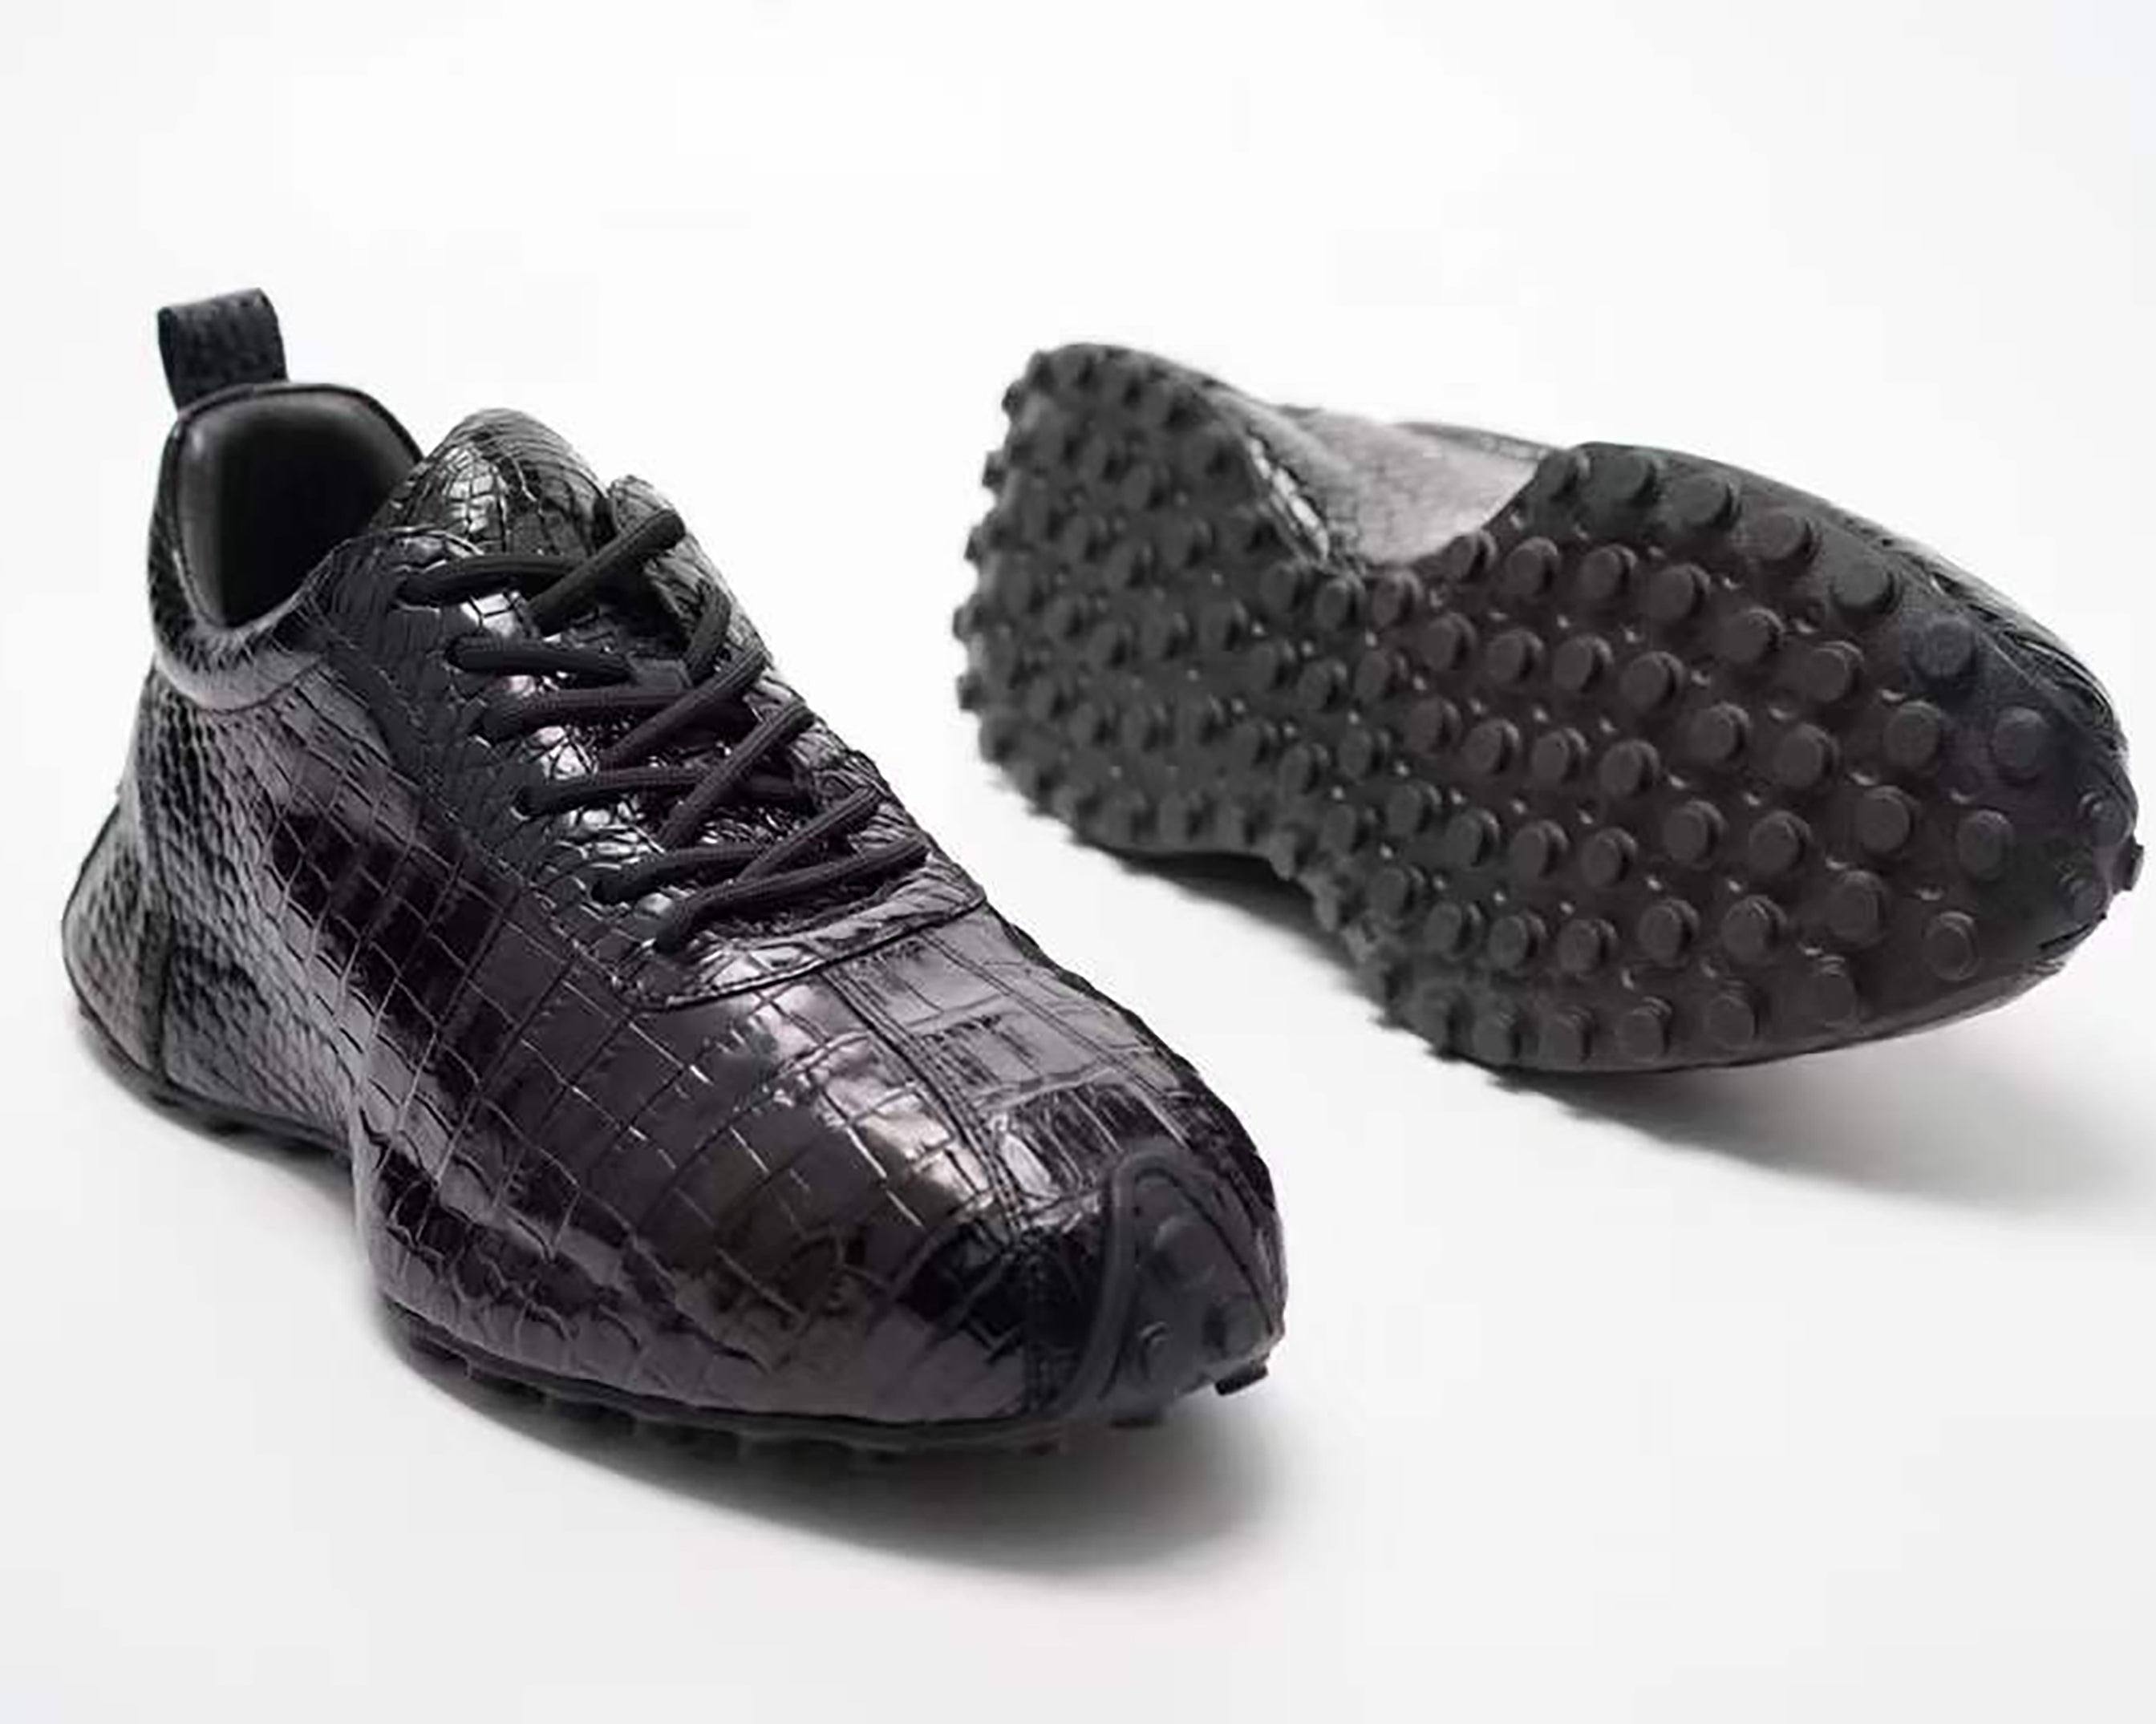 Men's Handmade Genuine Leather Sneaker